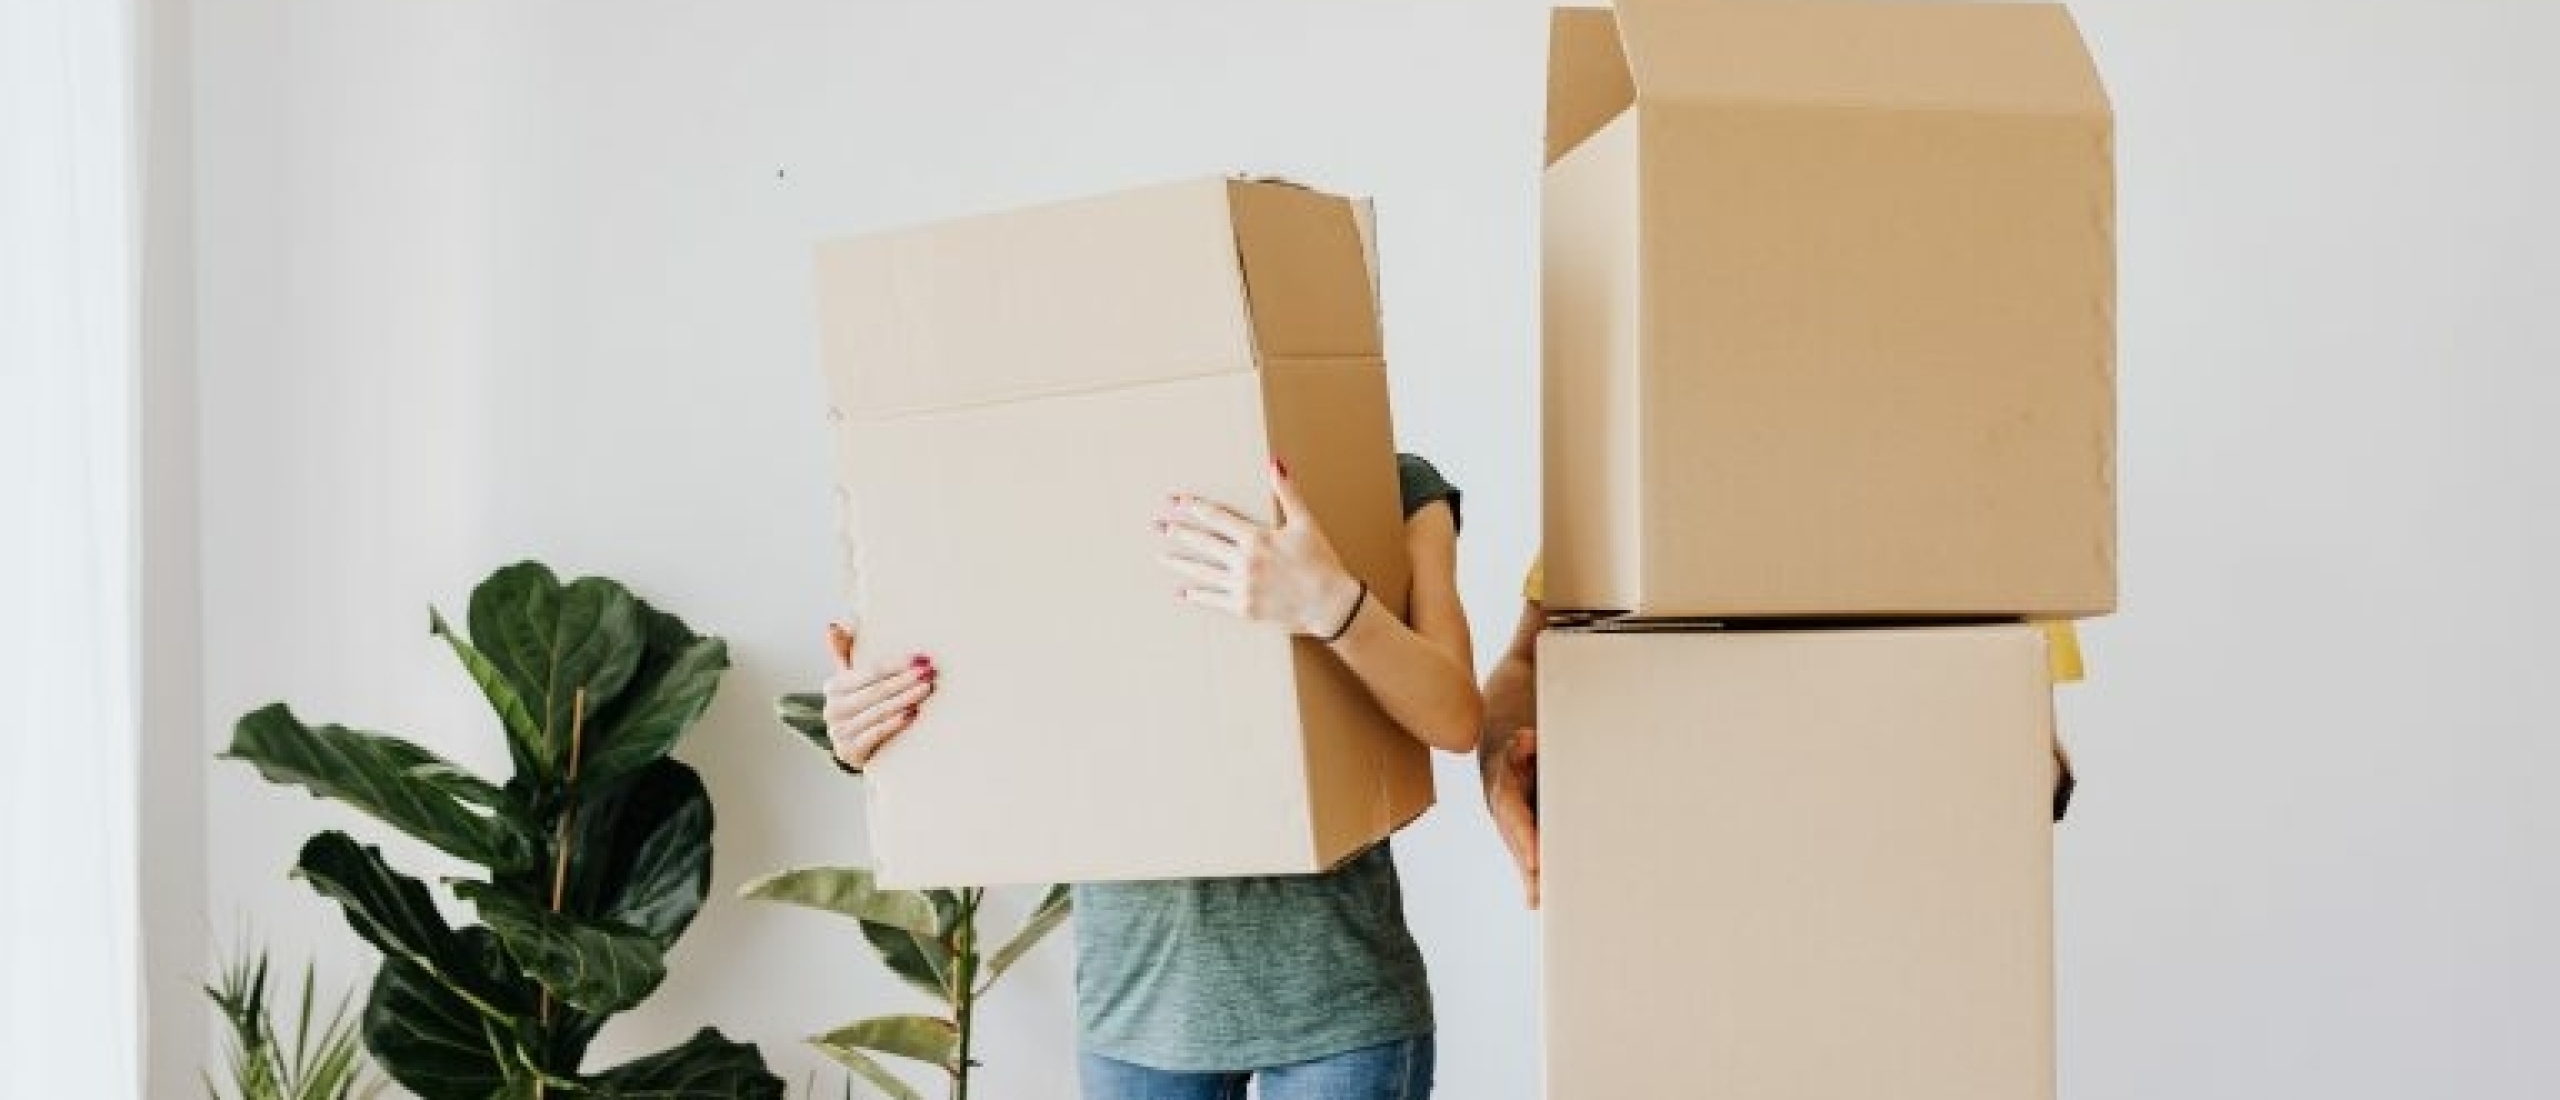 Verhuizen: wel of geen verhuisbedrijf inschakelen?